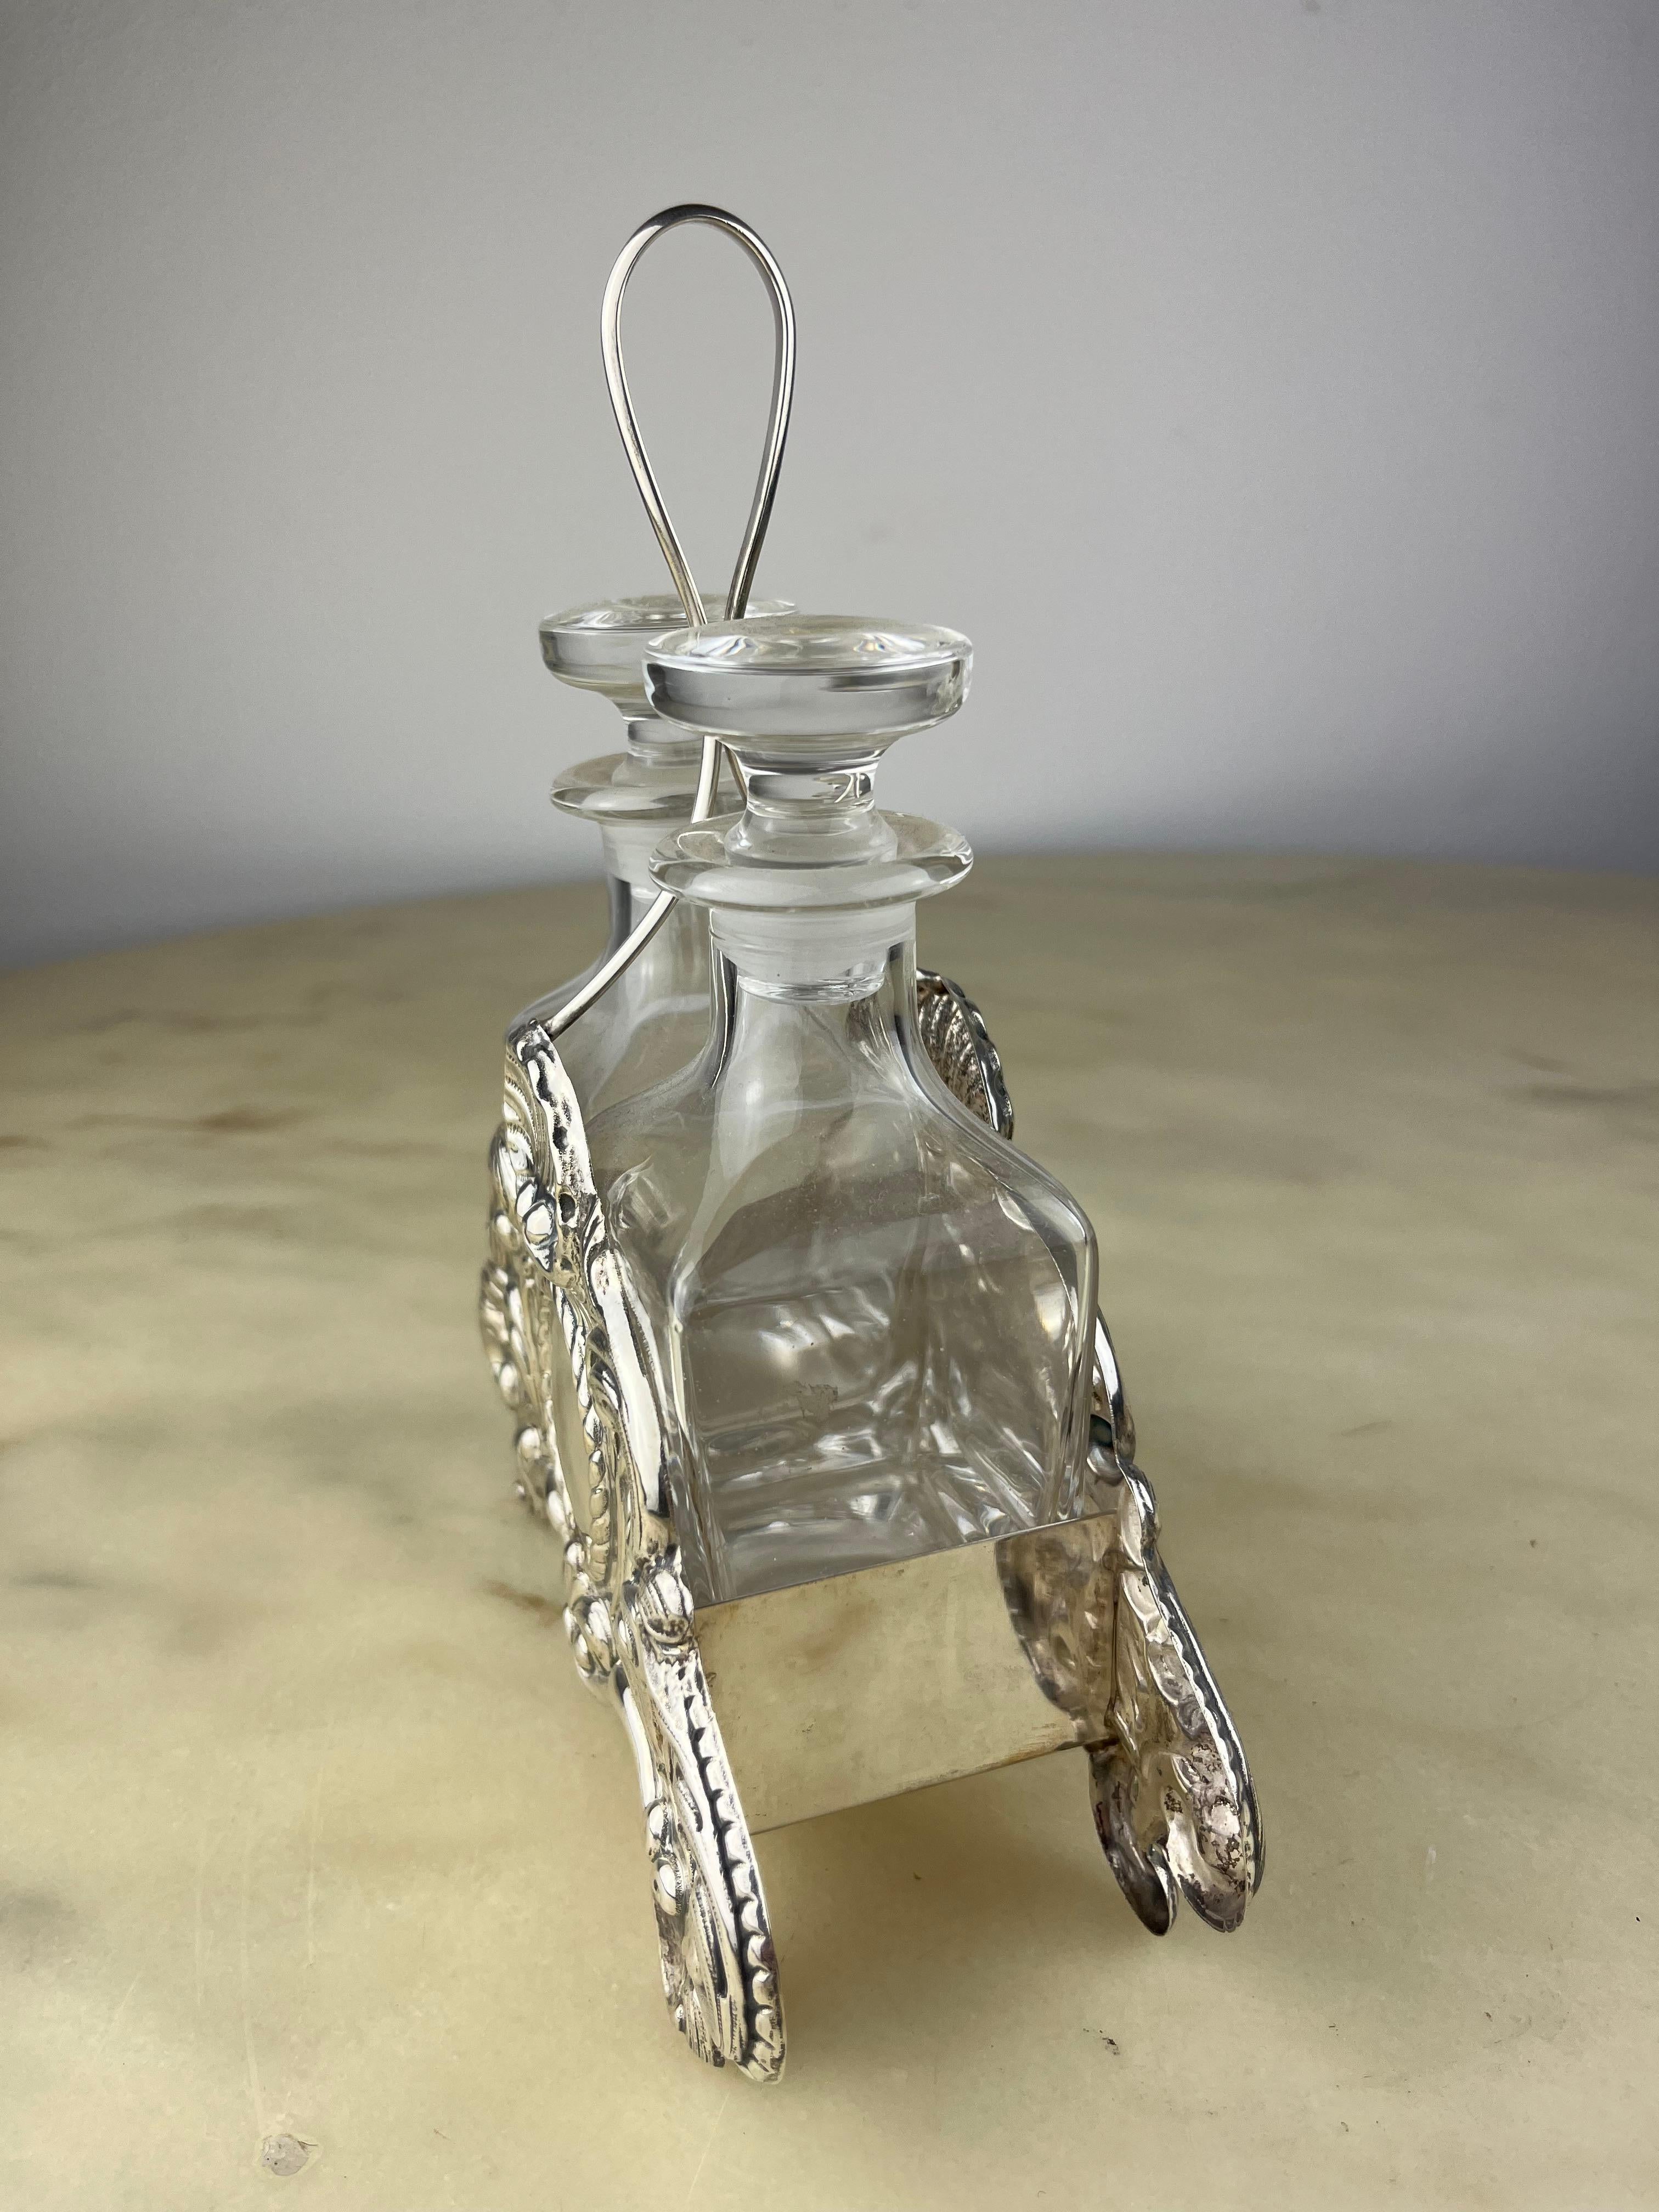 Öl und Essig, gefasst in 800 Silber und Kristall, Italien, 1990
Intakt, nie benutzt. Kleine Anzeichen von Alterung.
Gefunden in einer noblen Wohnung.